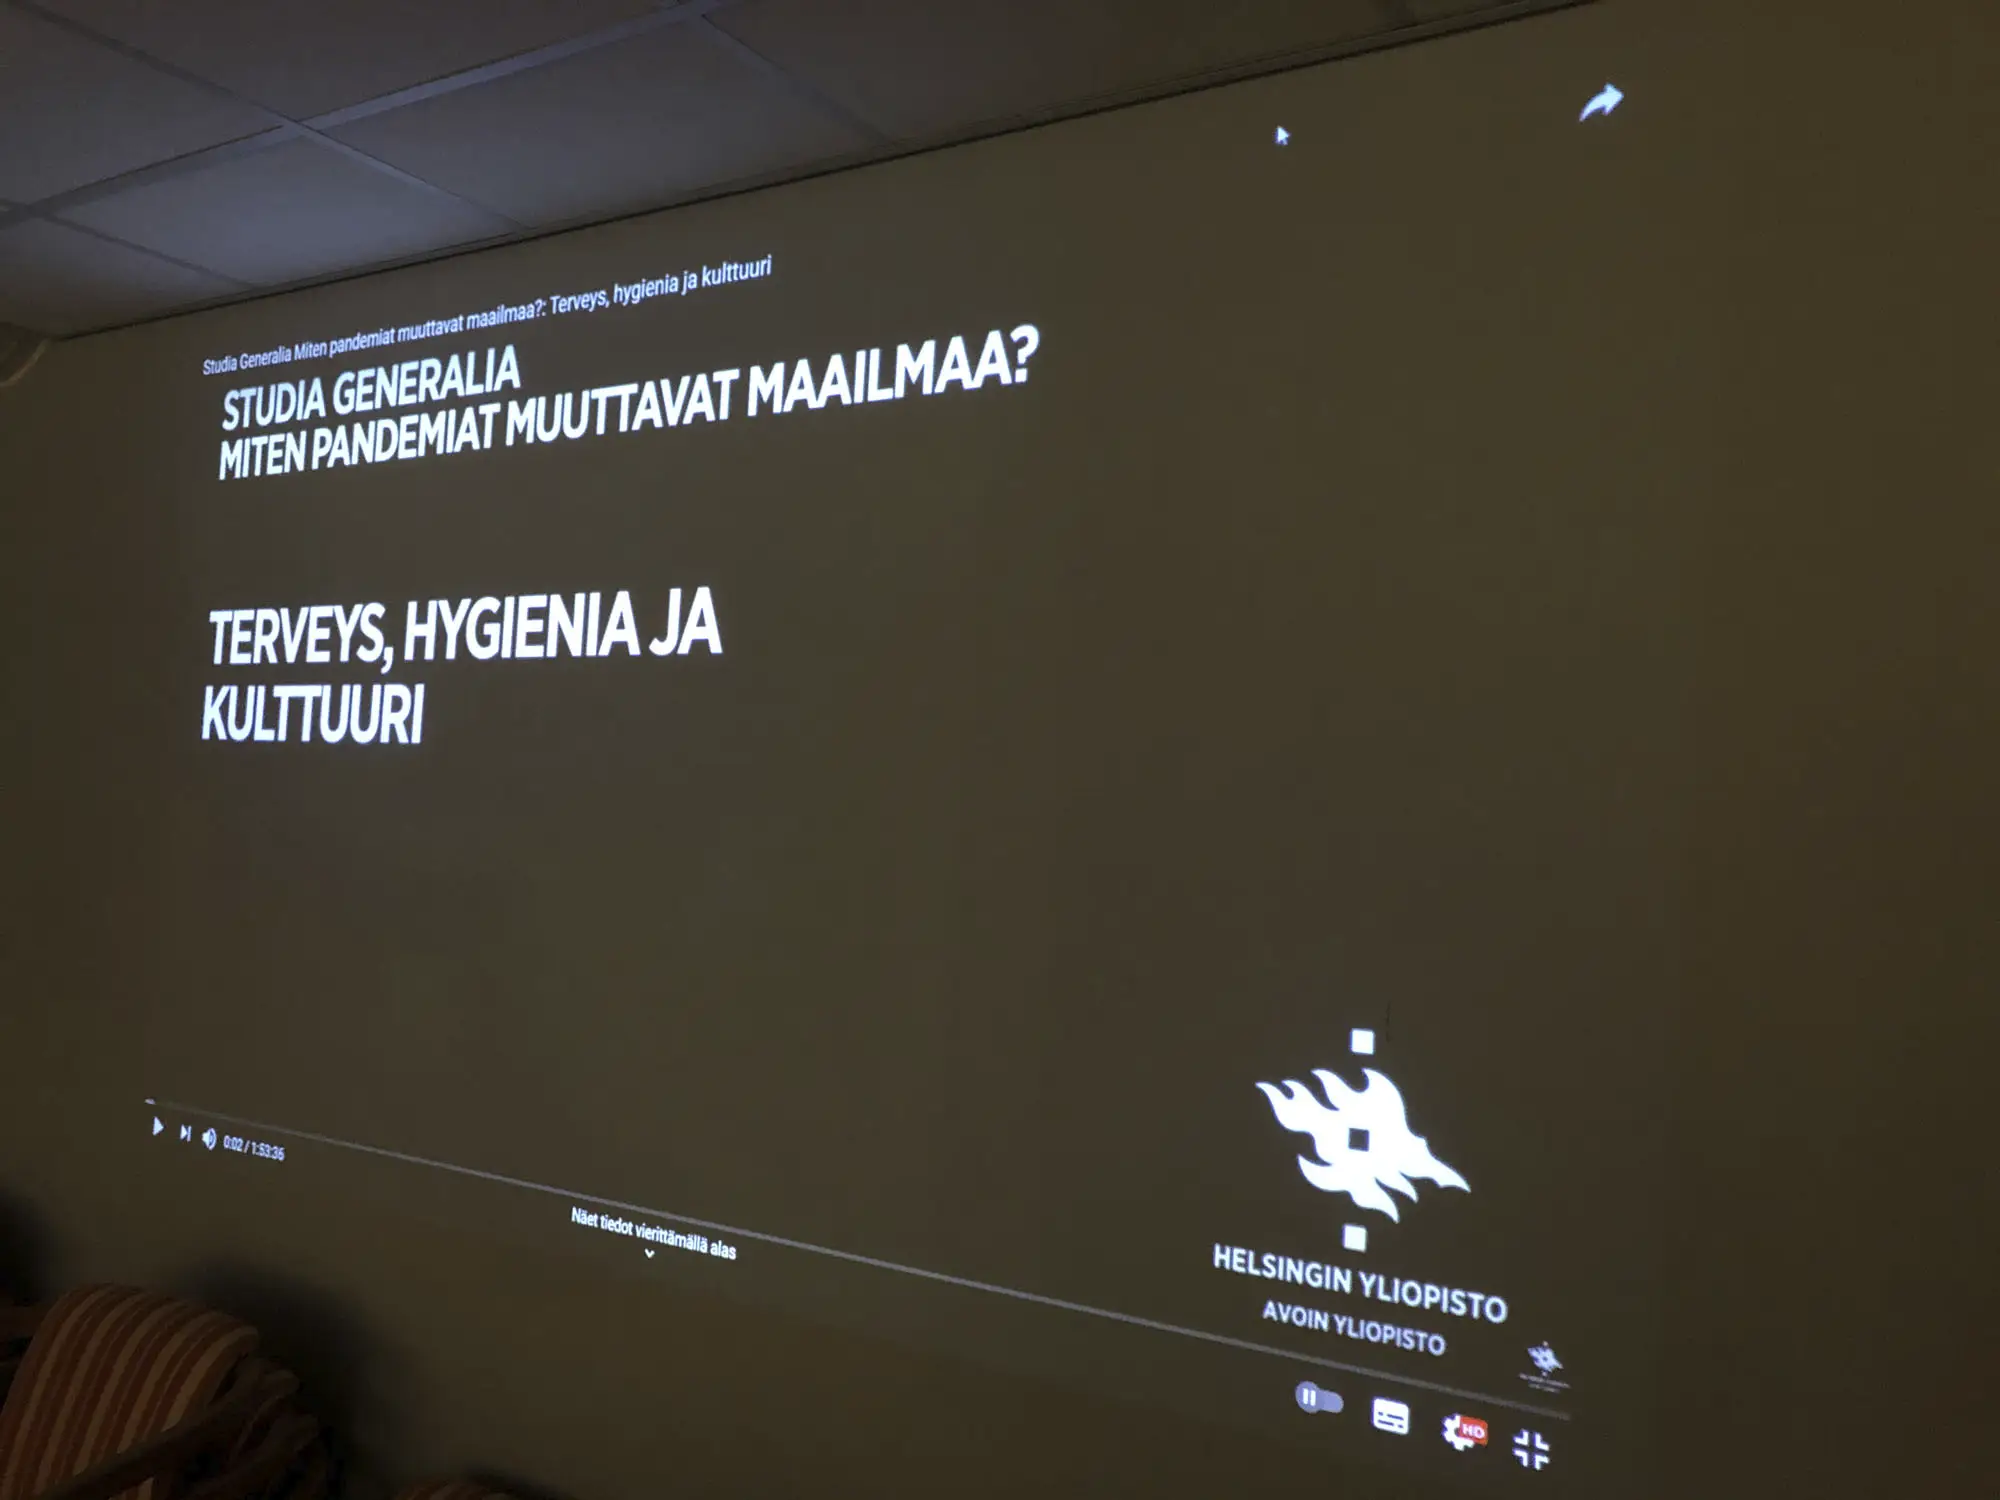 Katsoimme Helsingin yliopiston Studia Generalia -videoluentoa